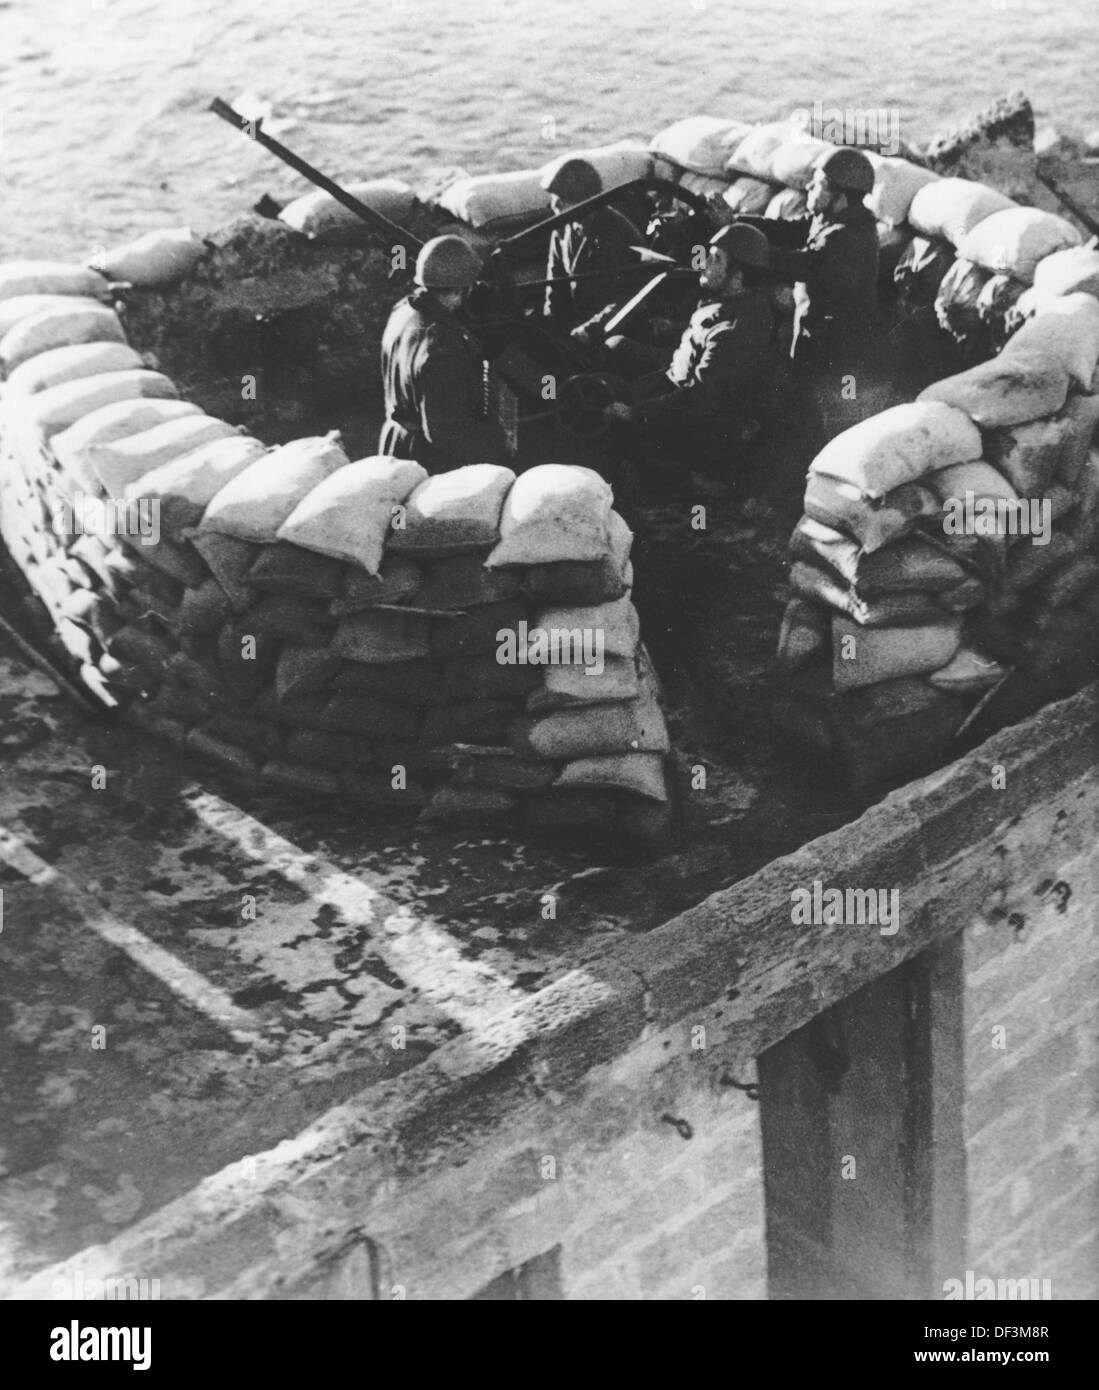 Das Bild der Nazi-Propaganda! Abbildung: Italienische Flugzeugabwehrartillerie in Libyen, veröffentlicht am 30. März 1943. Ort unbekannt. Fotoarchiv für Zeitgeschichte Stockfoto